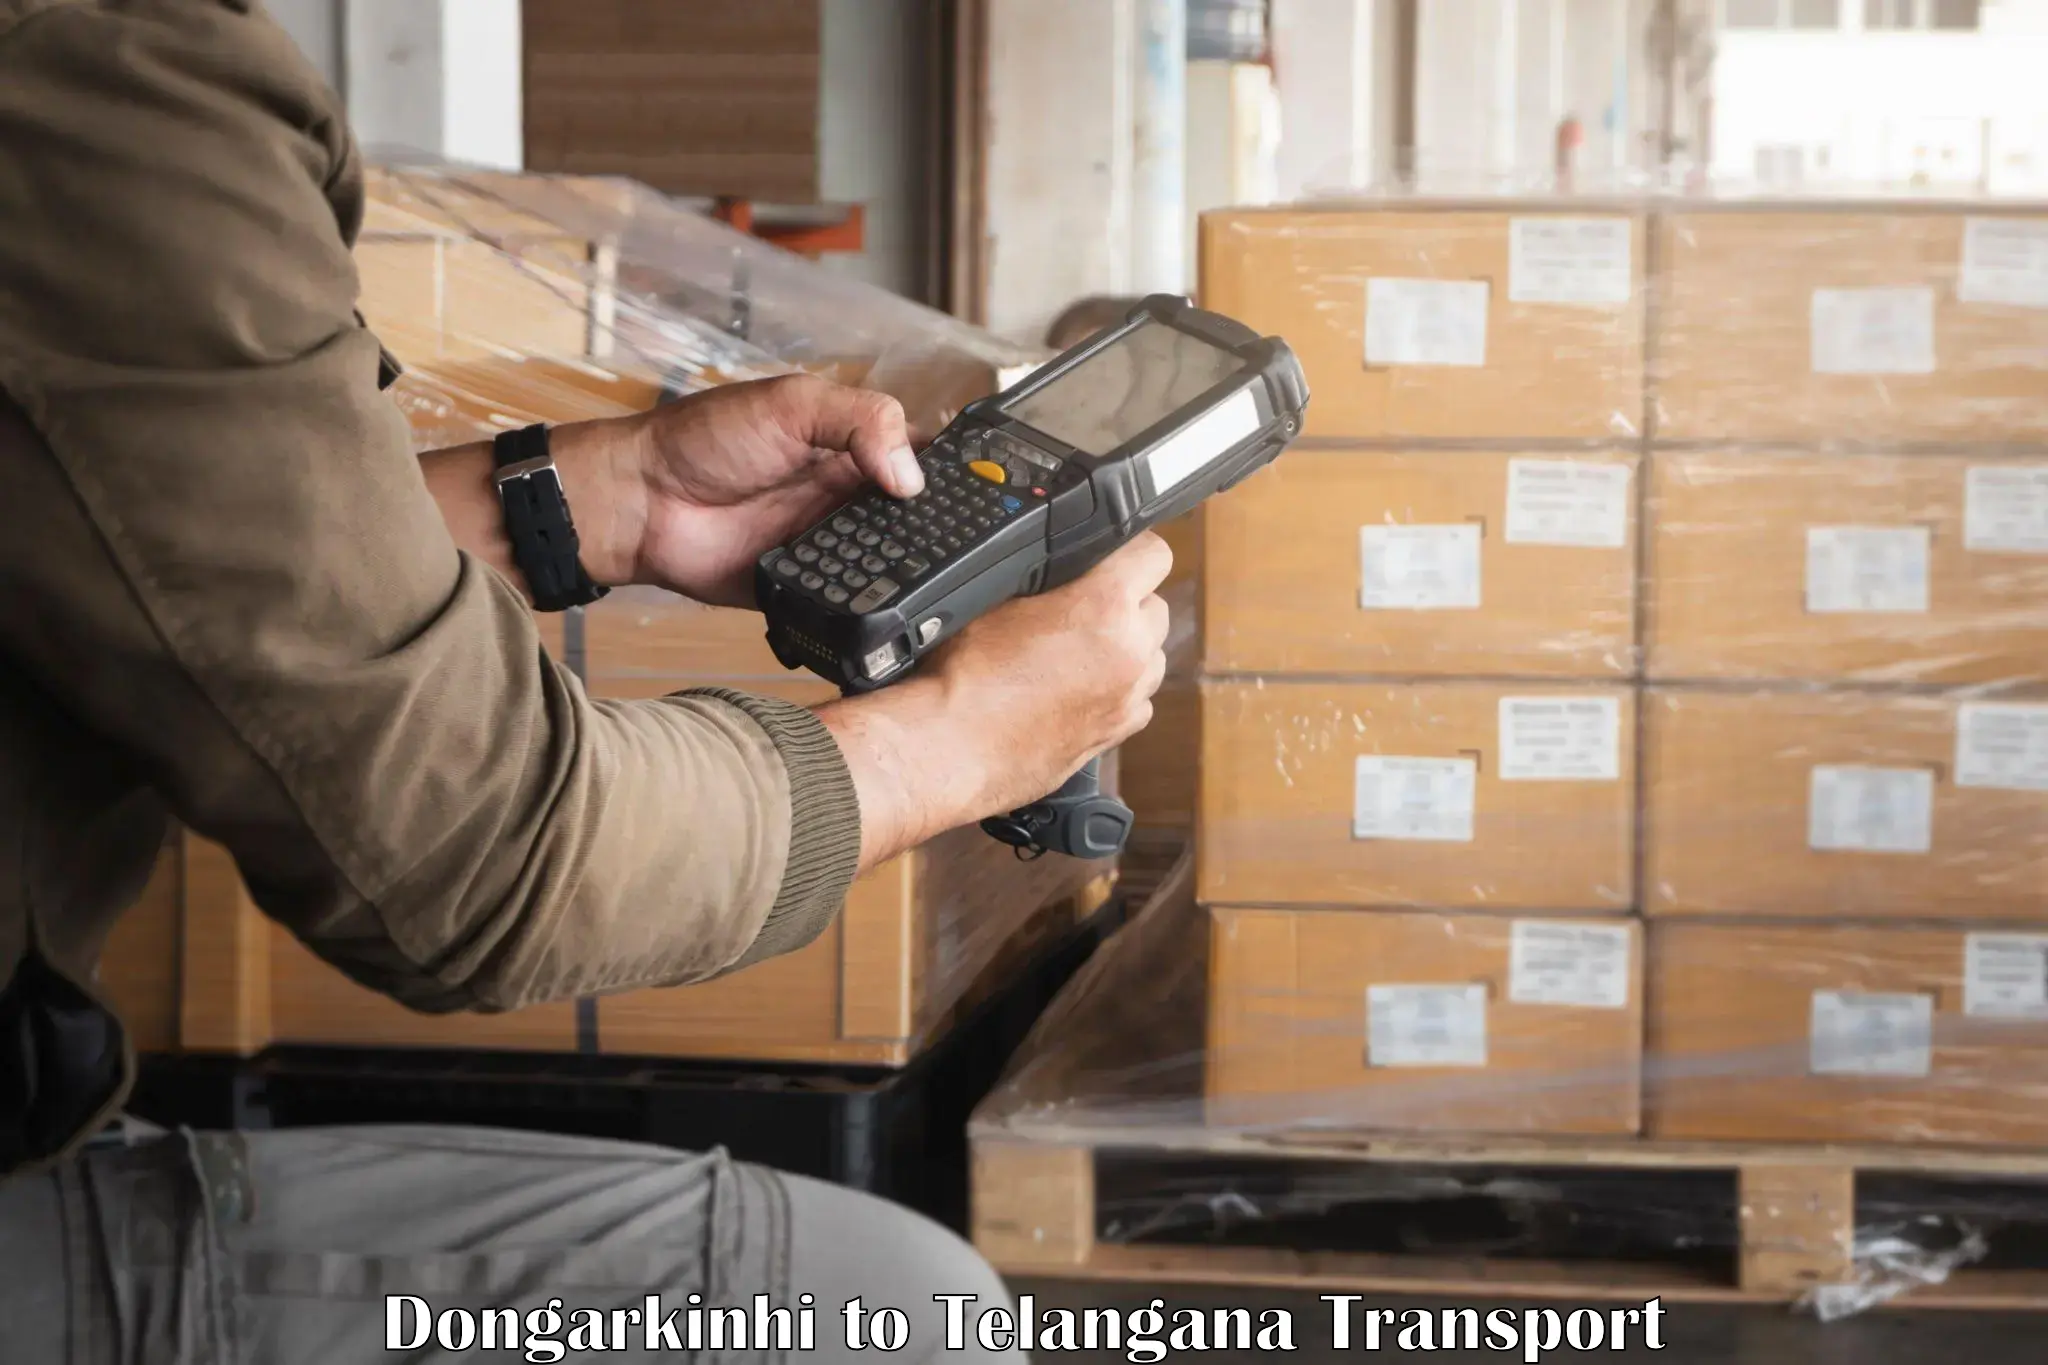 Furniture transport service Dongarkinhi to Kothakota